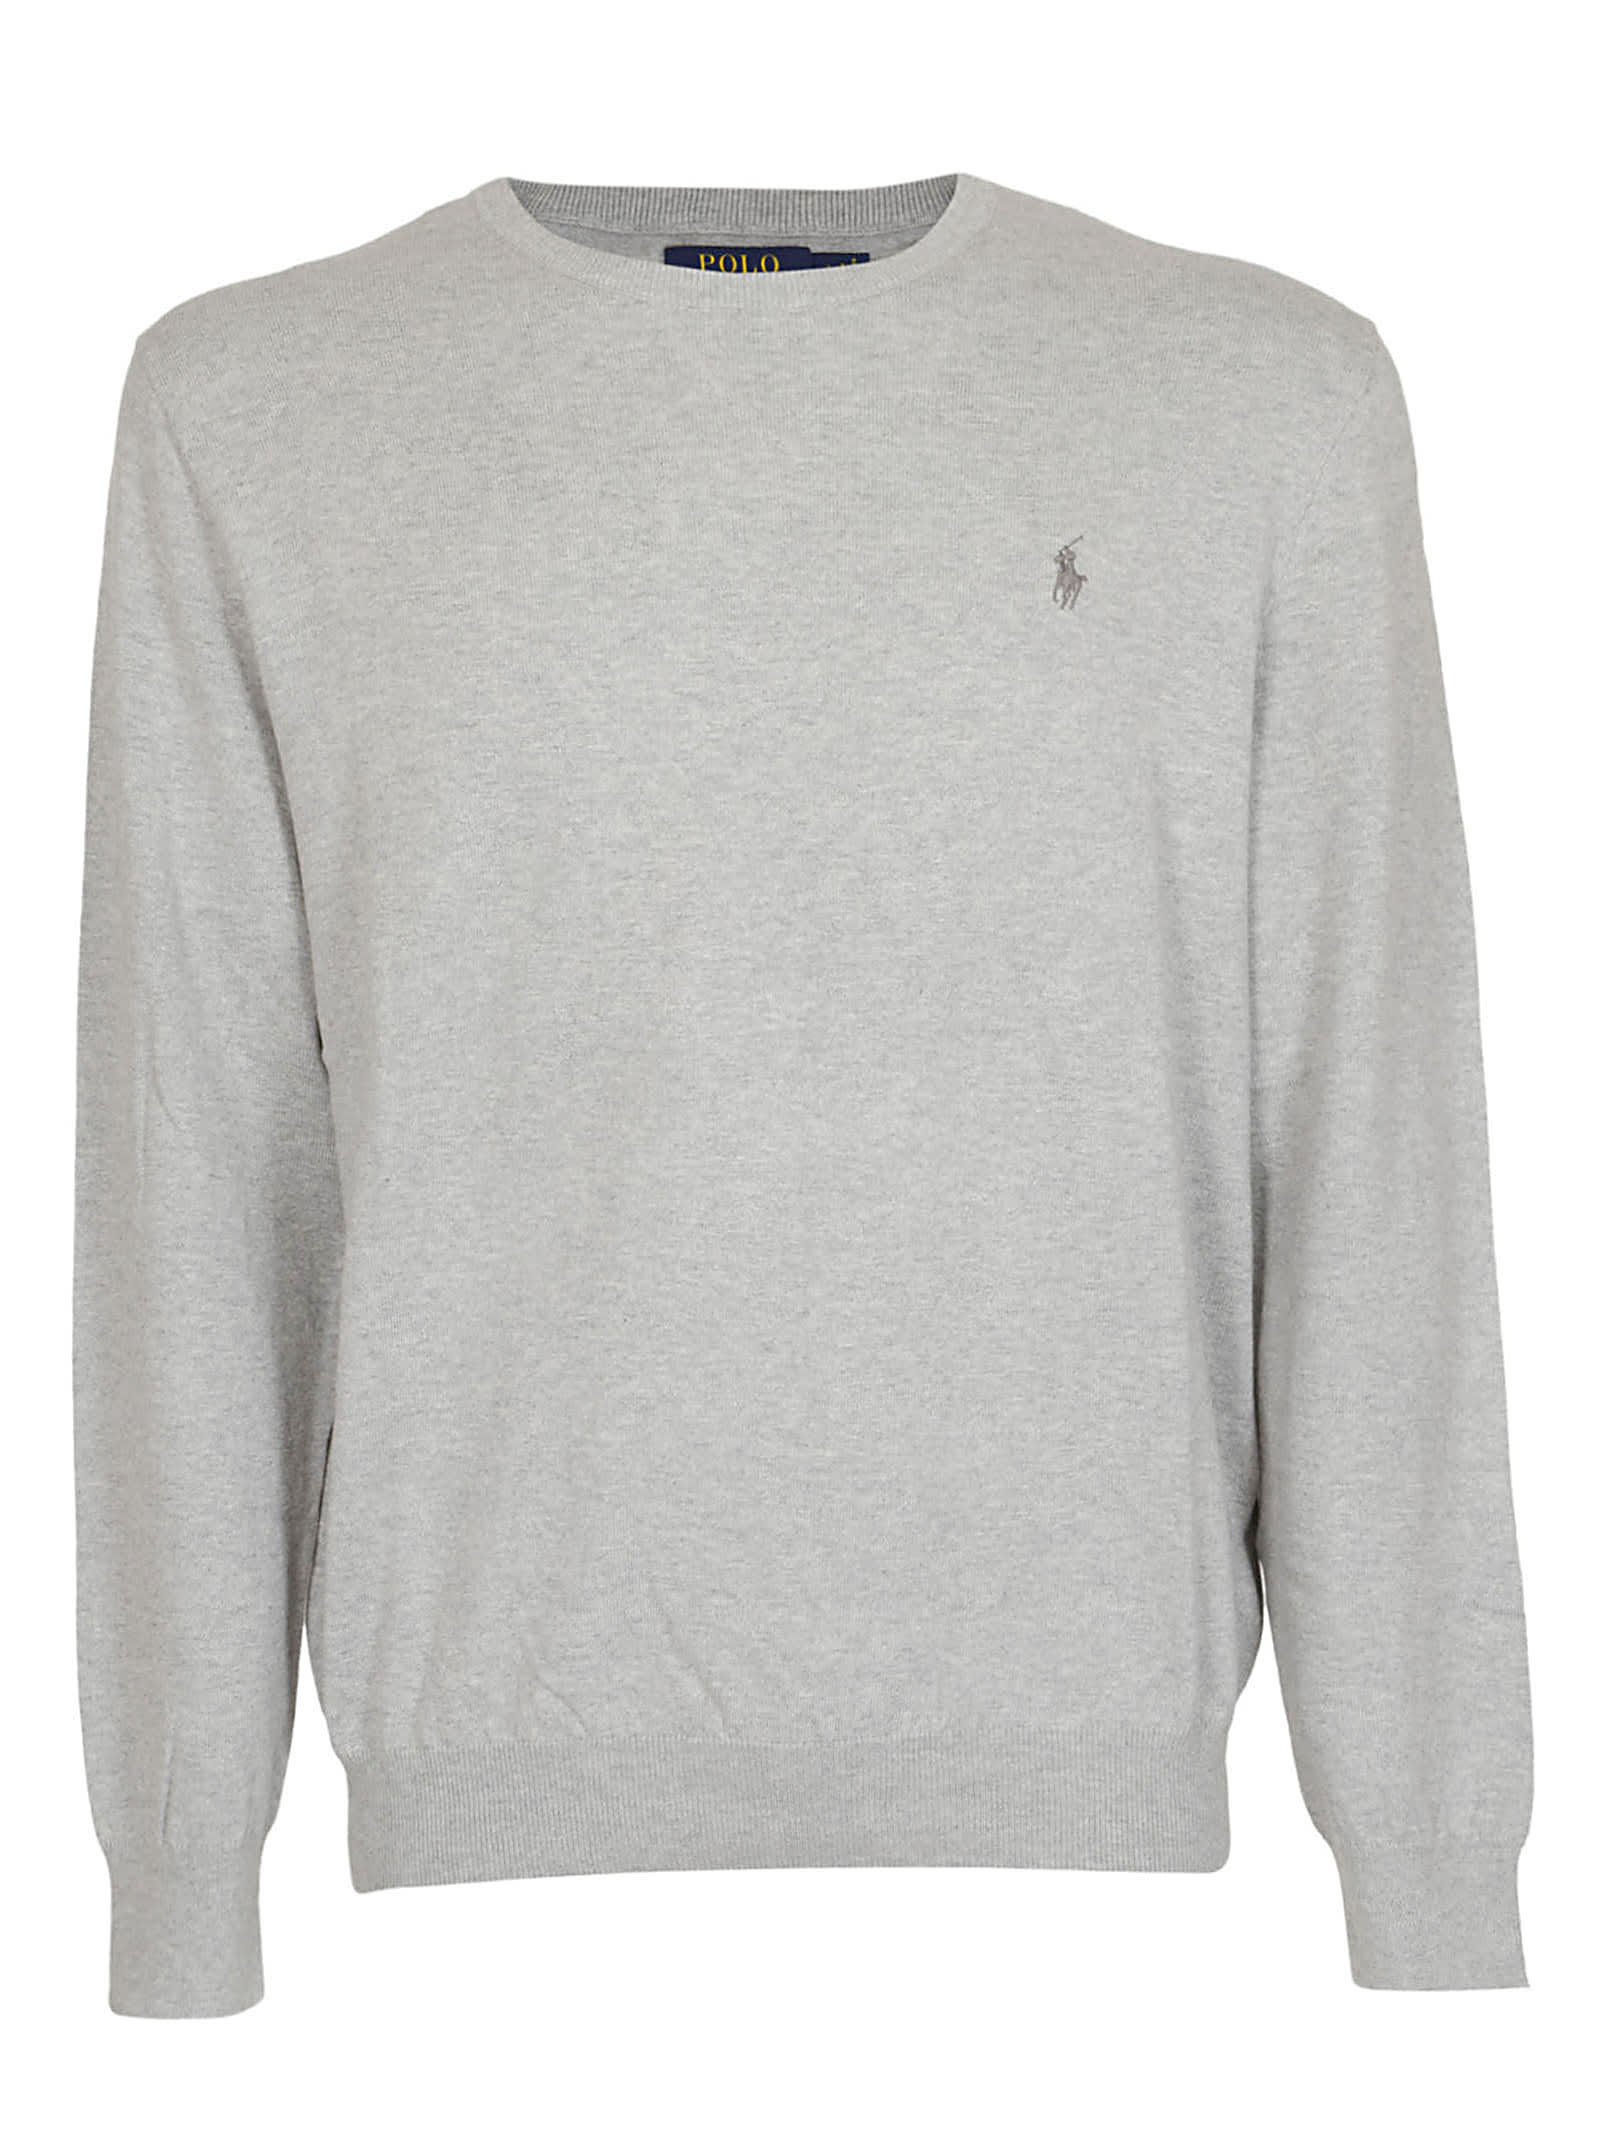 ralph lauren sweater price